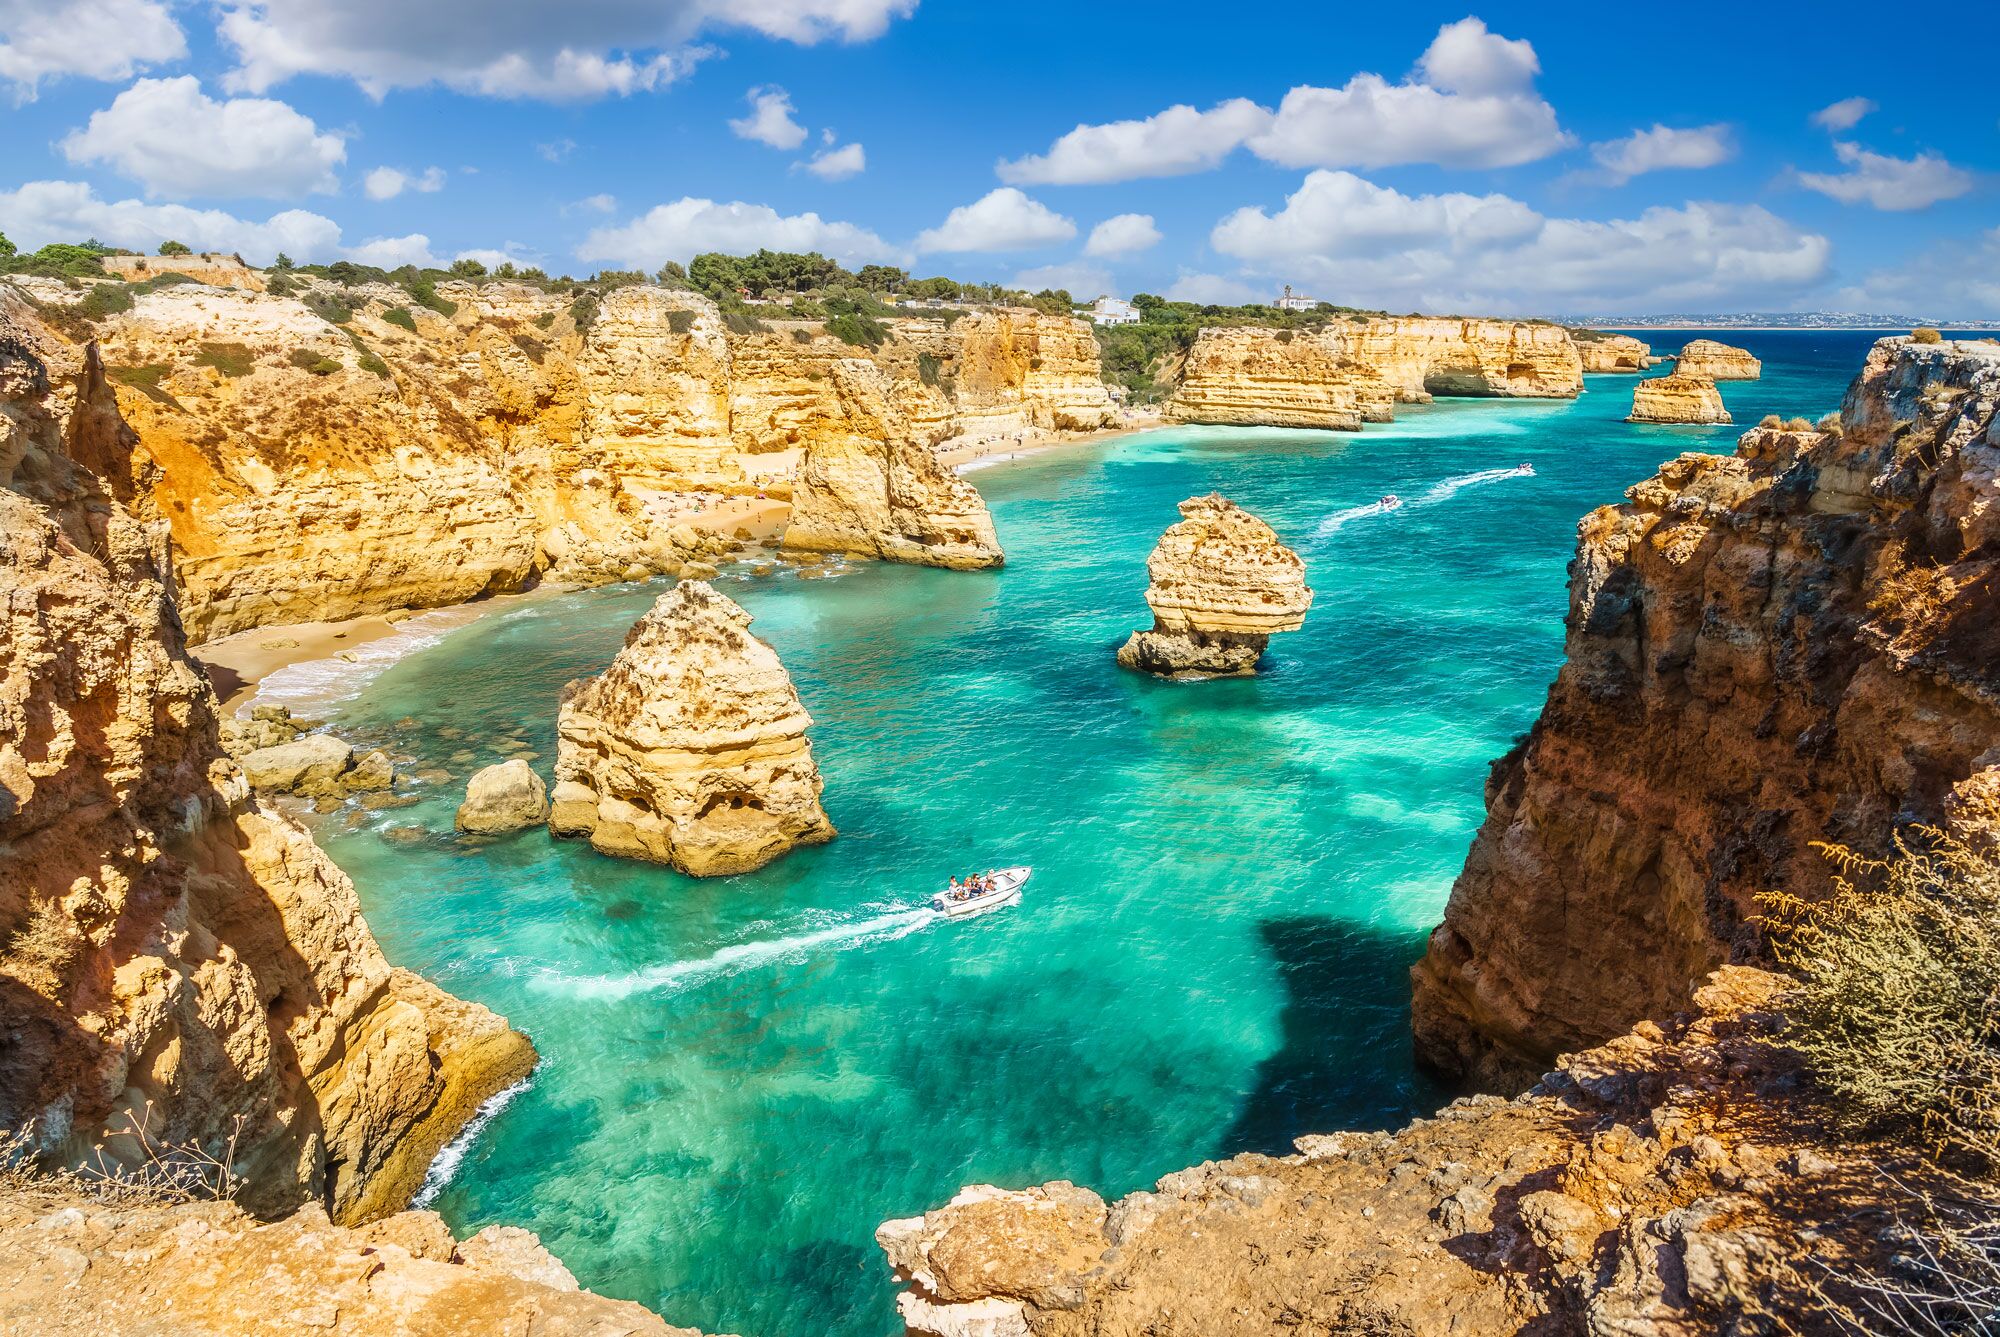 Melhores hotéis e casas de férias perto das praias do Algarve (35 dicas)